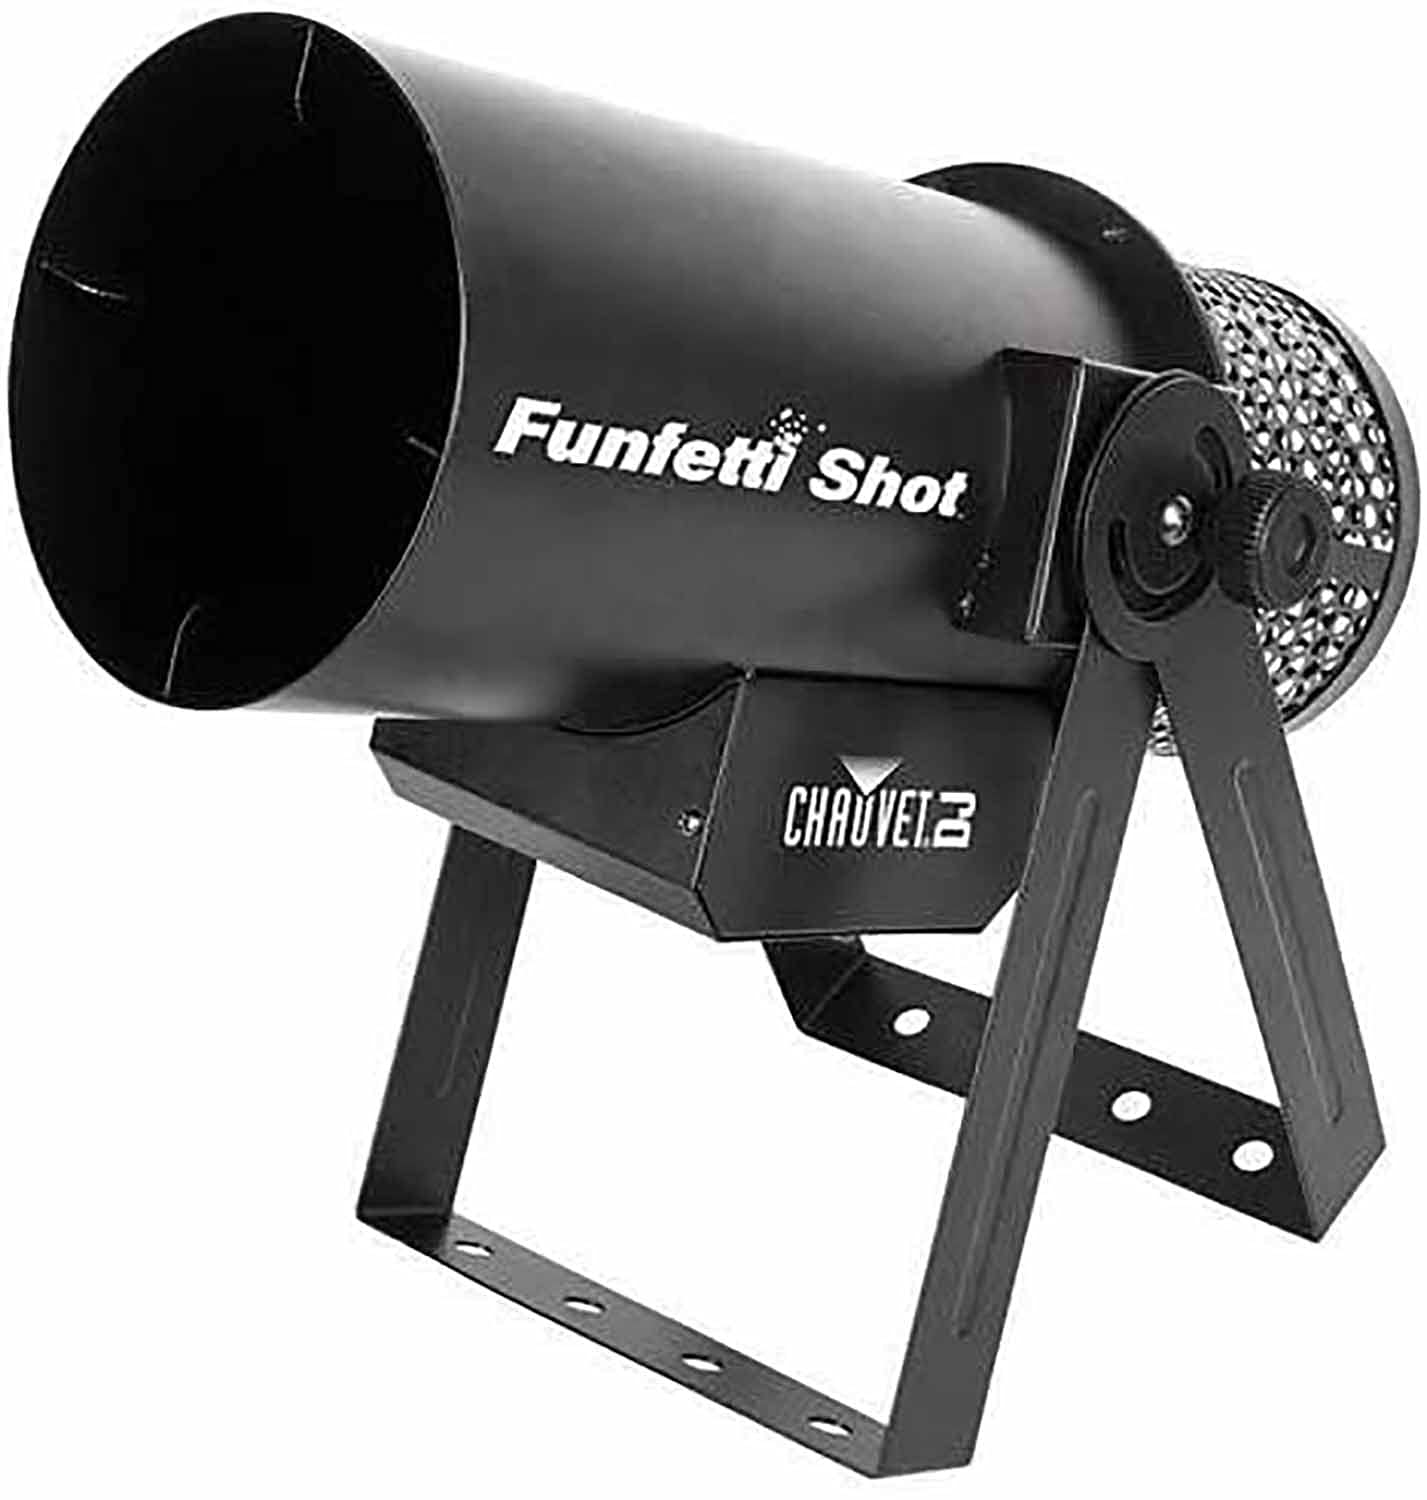 CHAUVET DJ FunFetti Shot Professional Confetti Launcher مع جهاز تحكم عن بعد لاسلكي للحفلات الموسيقية والحفلات والمناسبات الخاصة